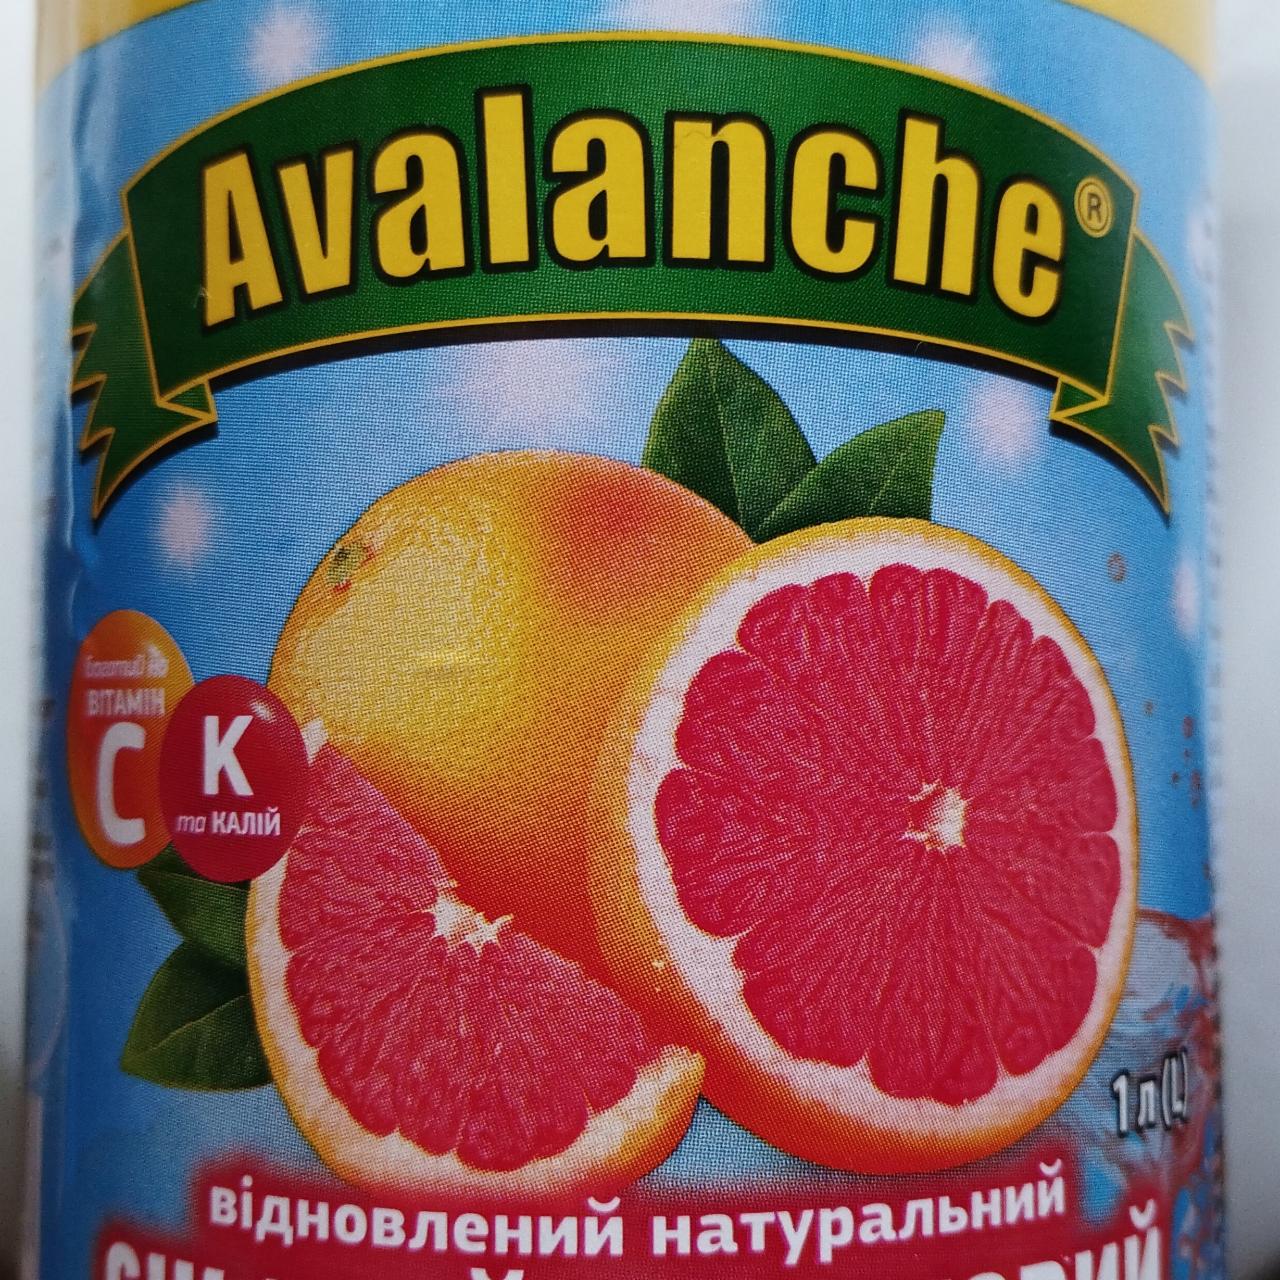 Фото - Грейпфрутовый сок Avalanche